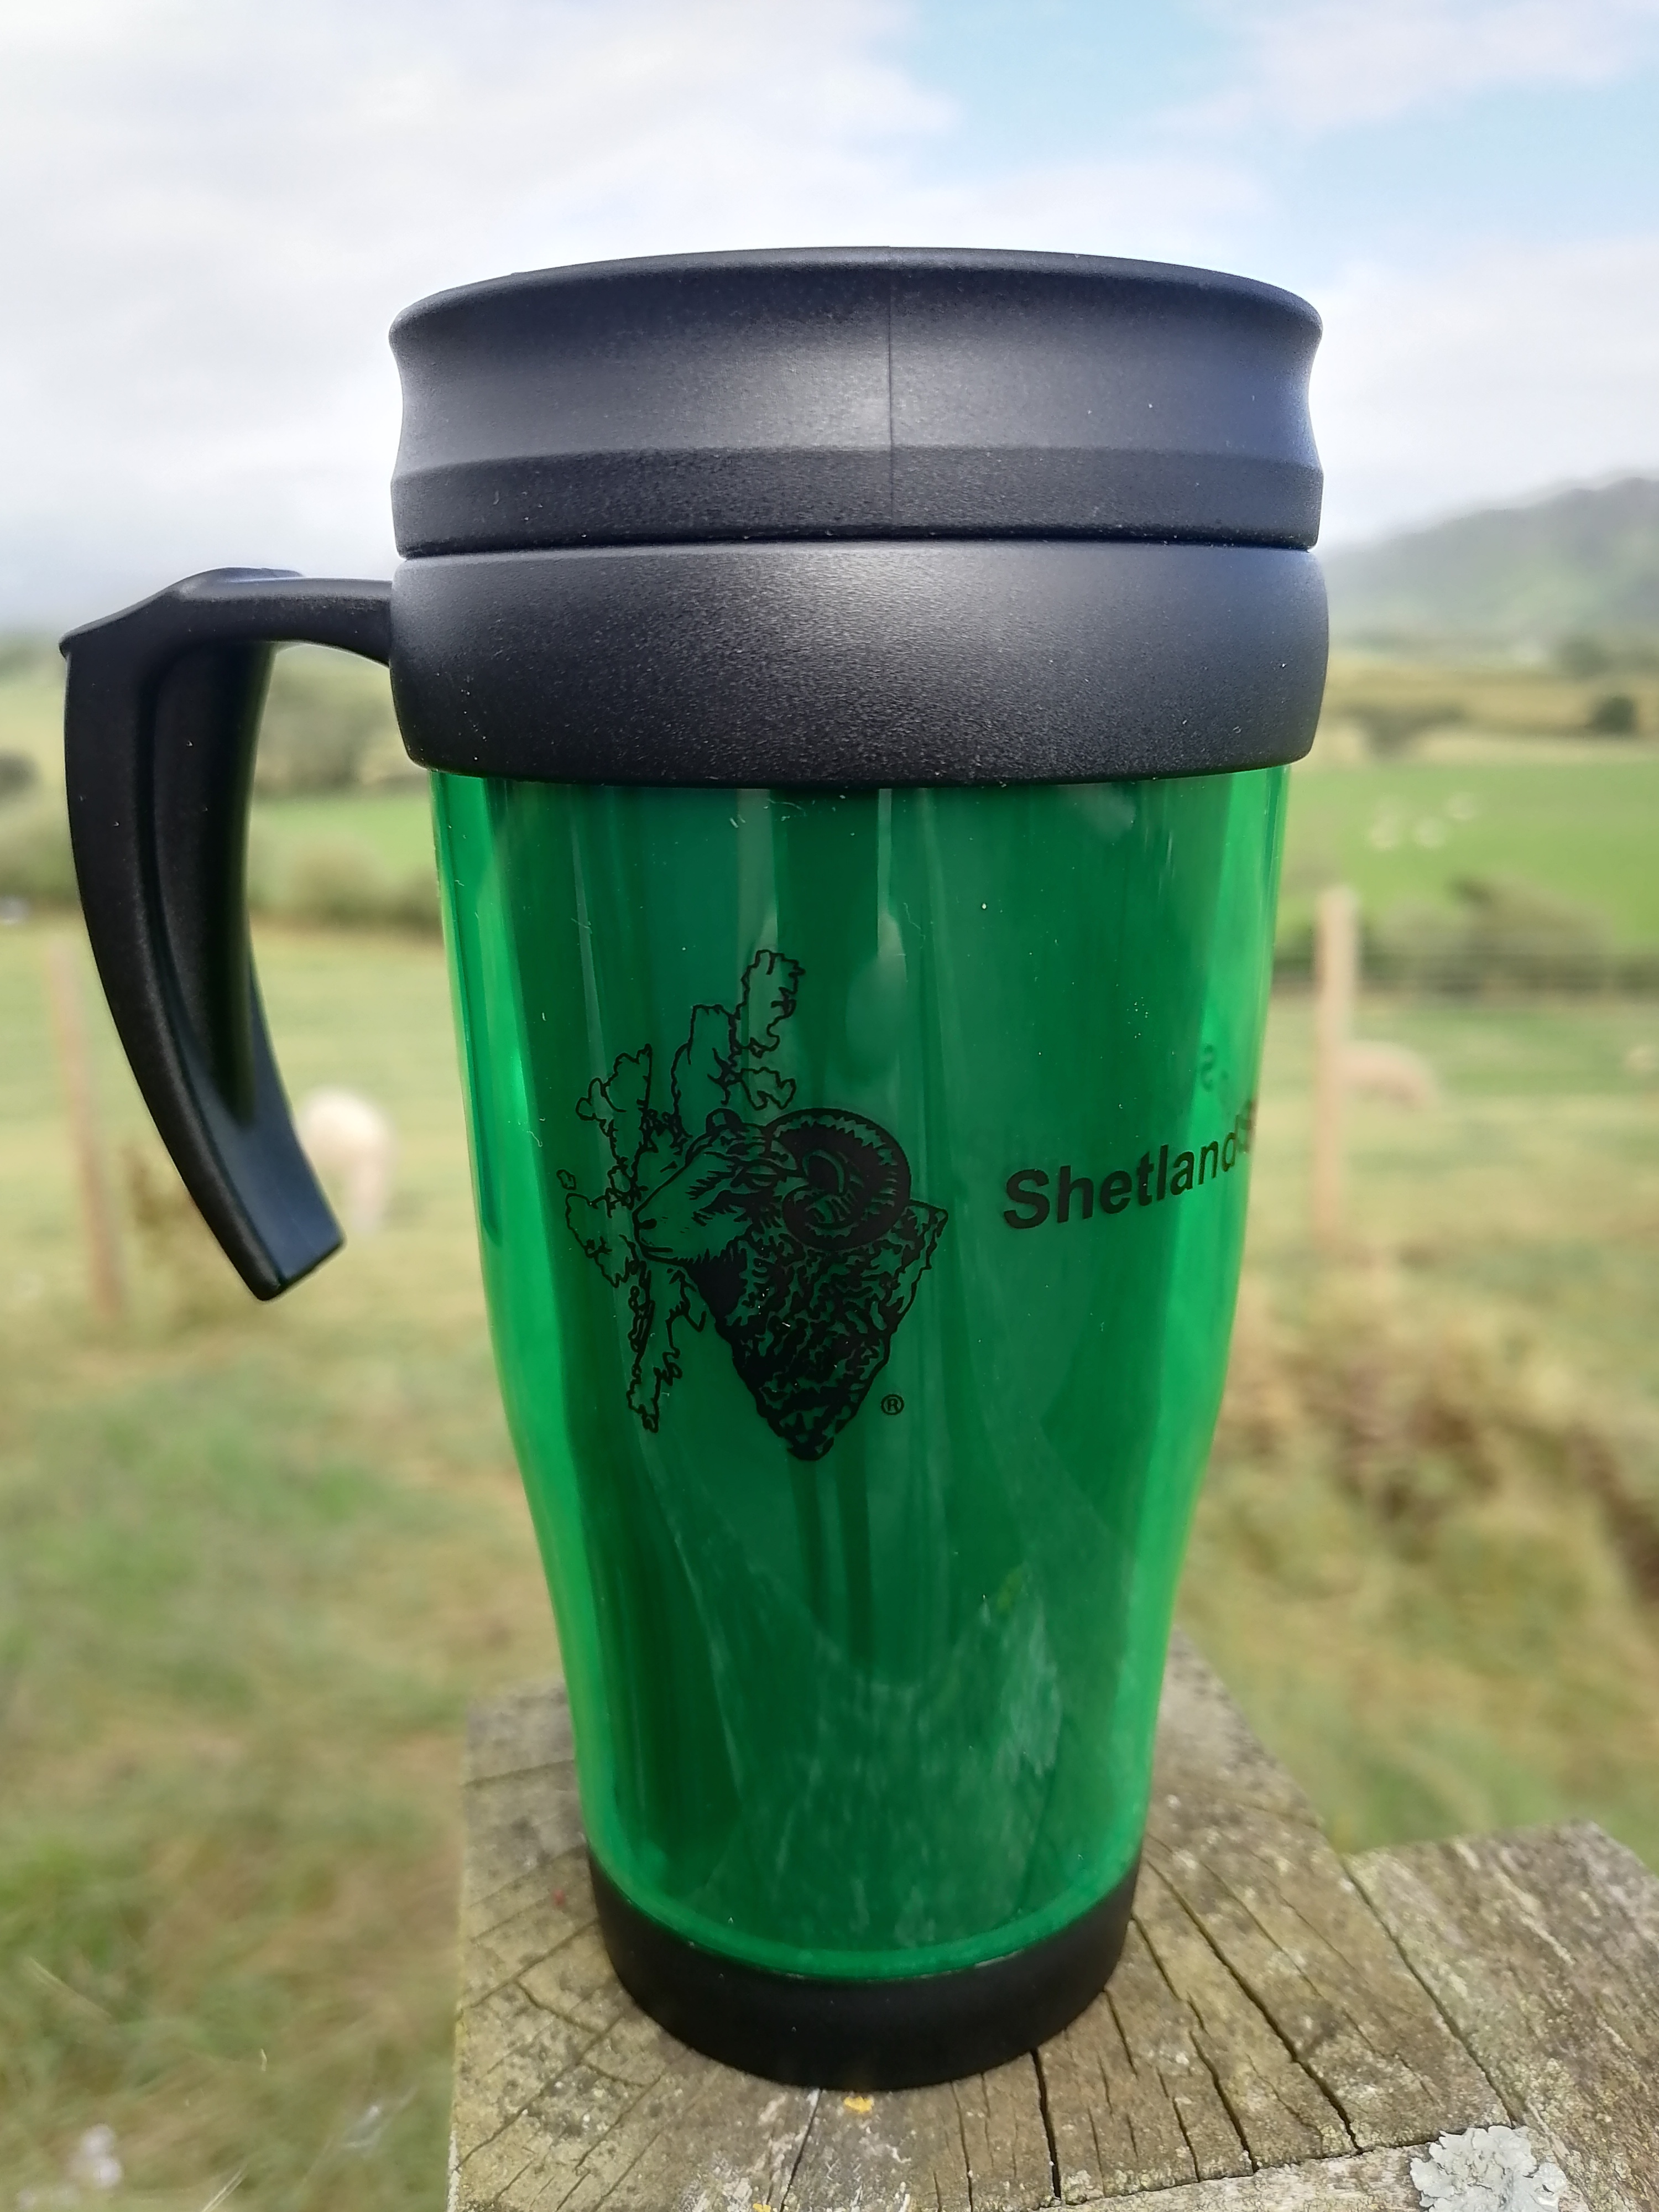 Shetland Sheep Society Travel Mug